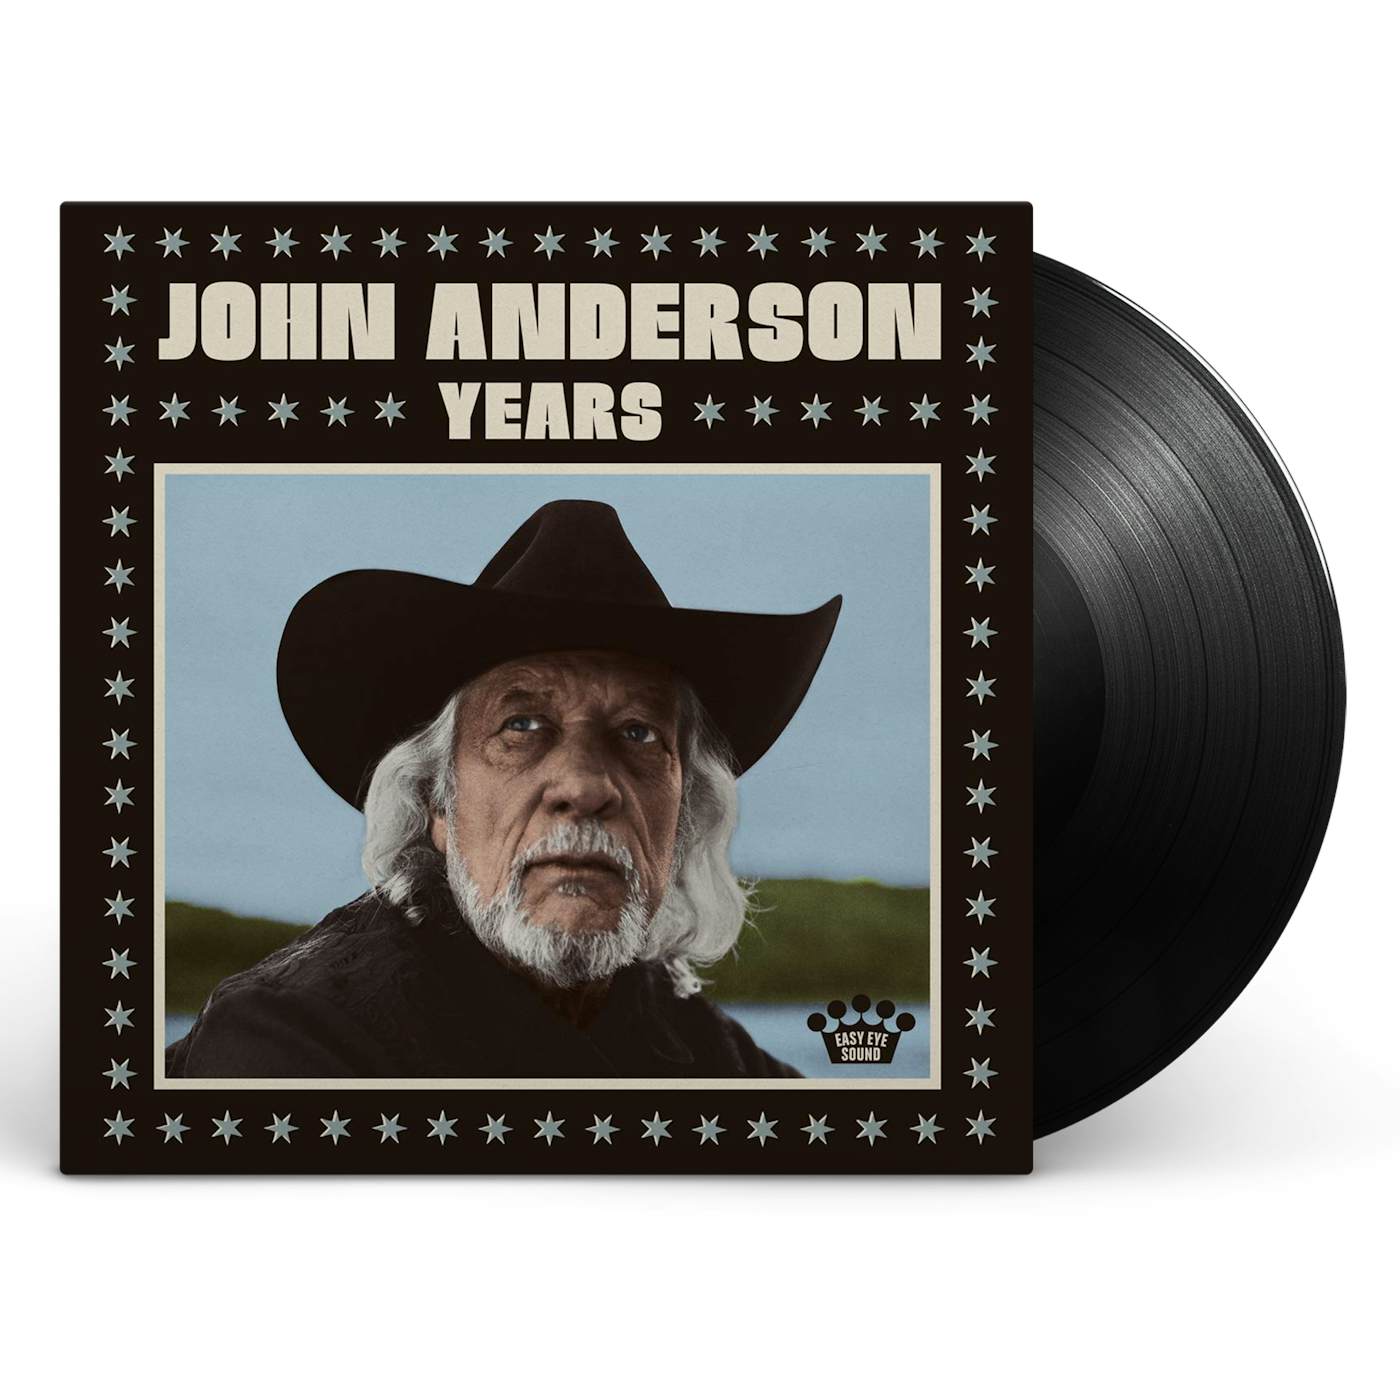 John Anderson Years [Vinyl]